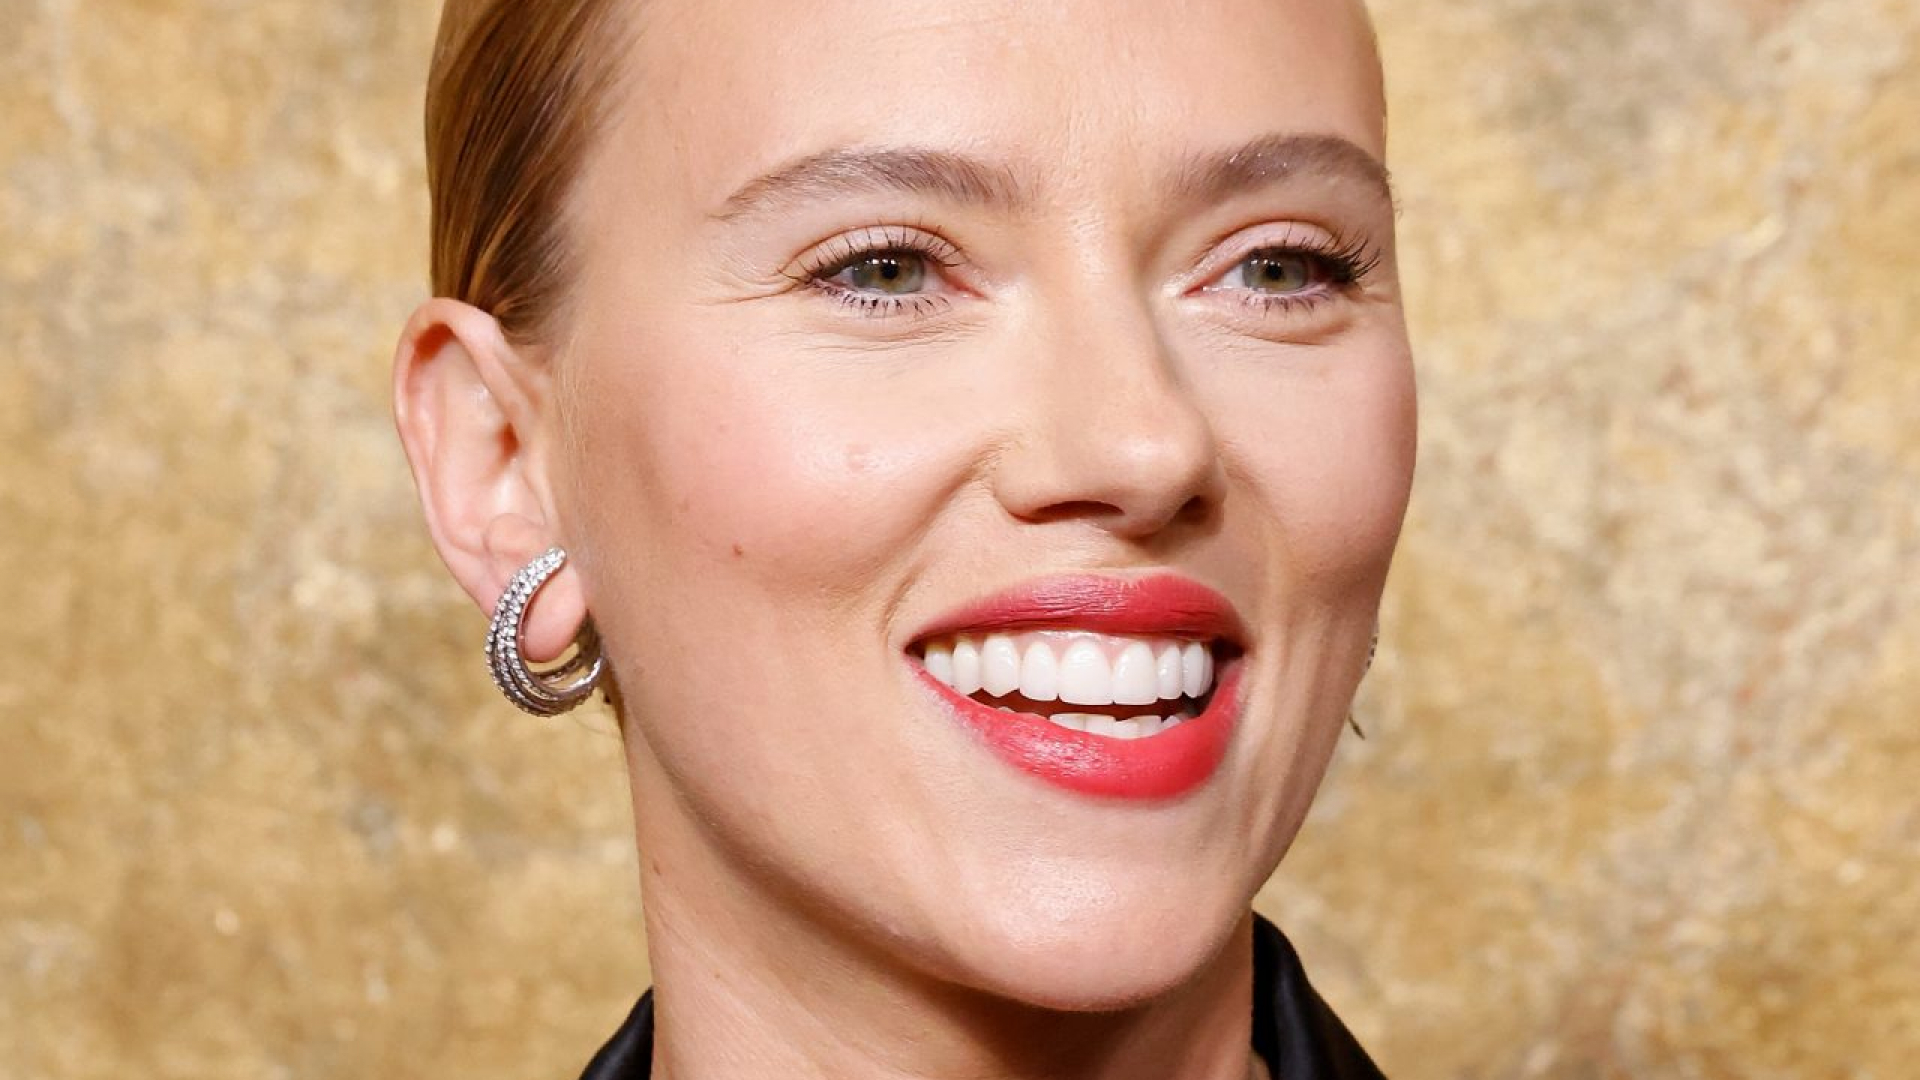 Scarlett Johansson is launching a beauty brand